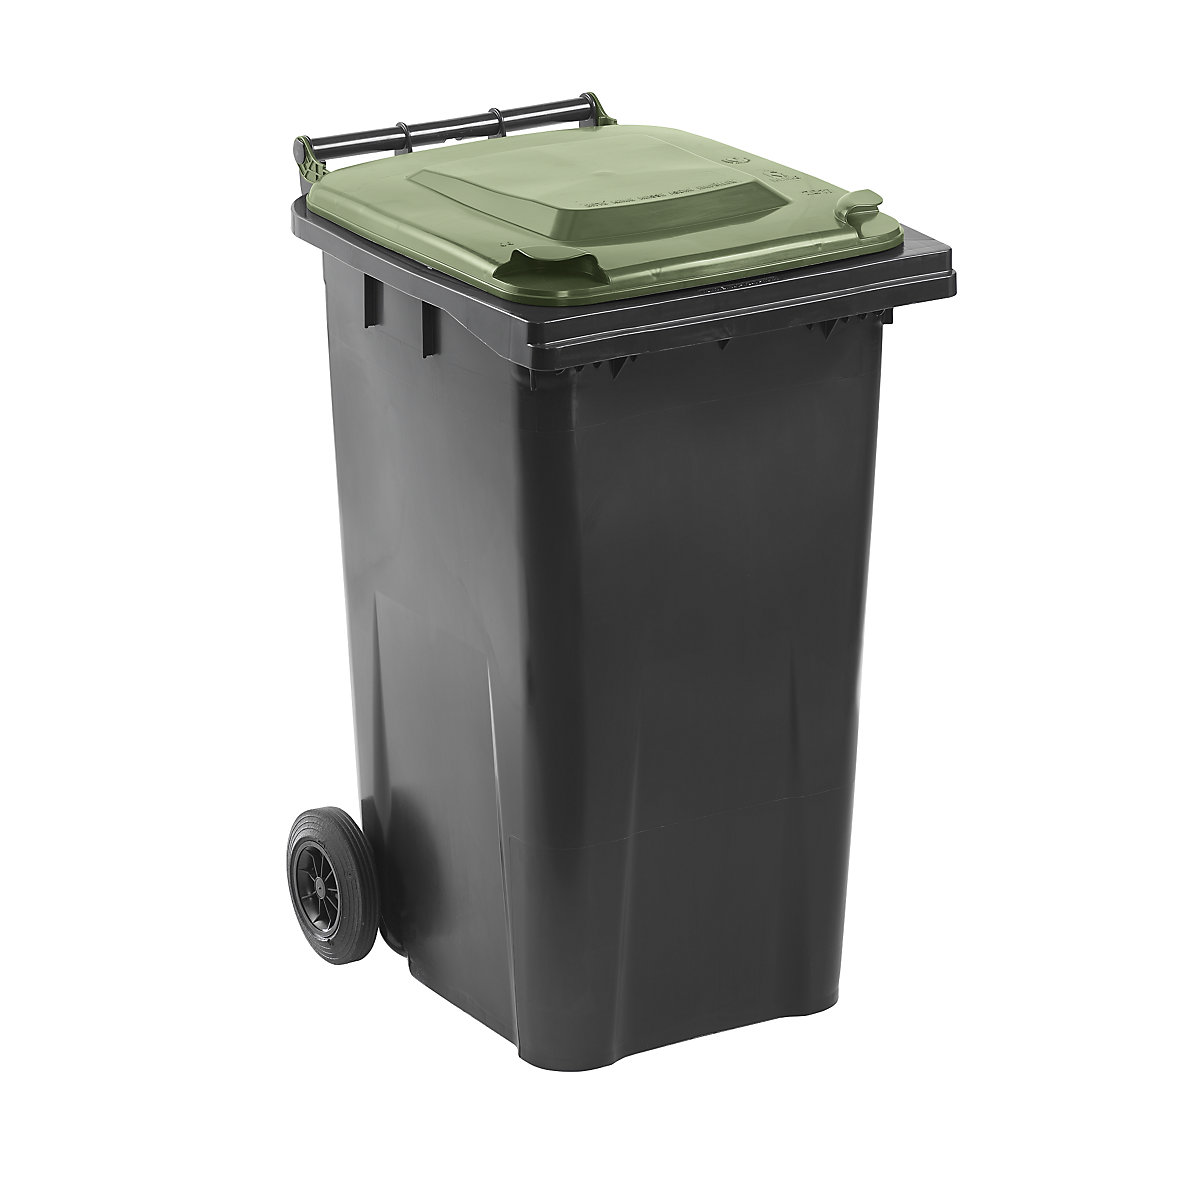 Waste bin to DIN EN 840, capacity 240 l, WxHxD 580 x 1100 x 740 mm, charcoal, green lid-7